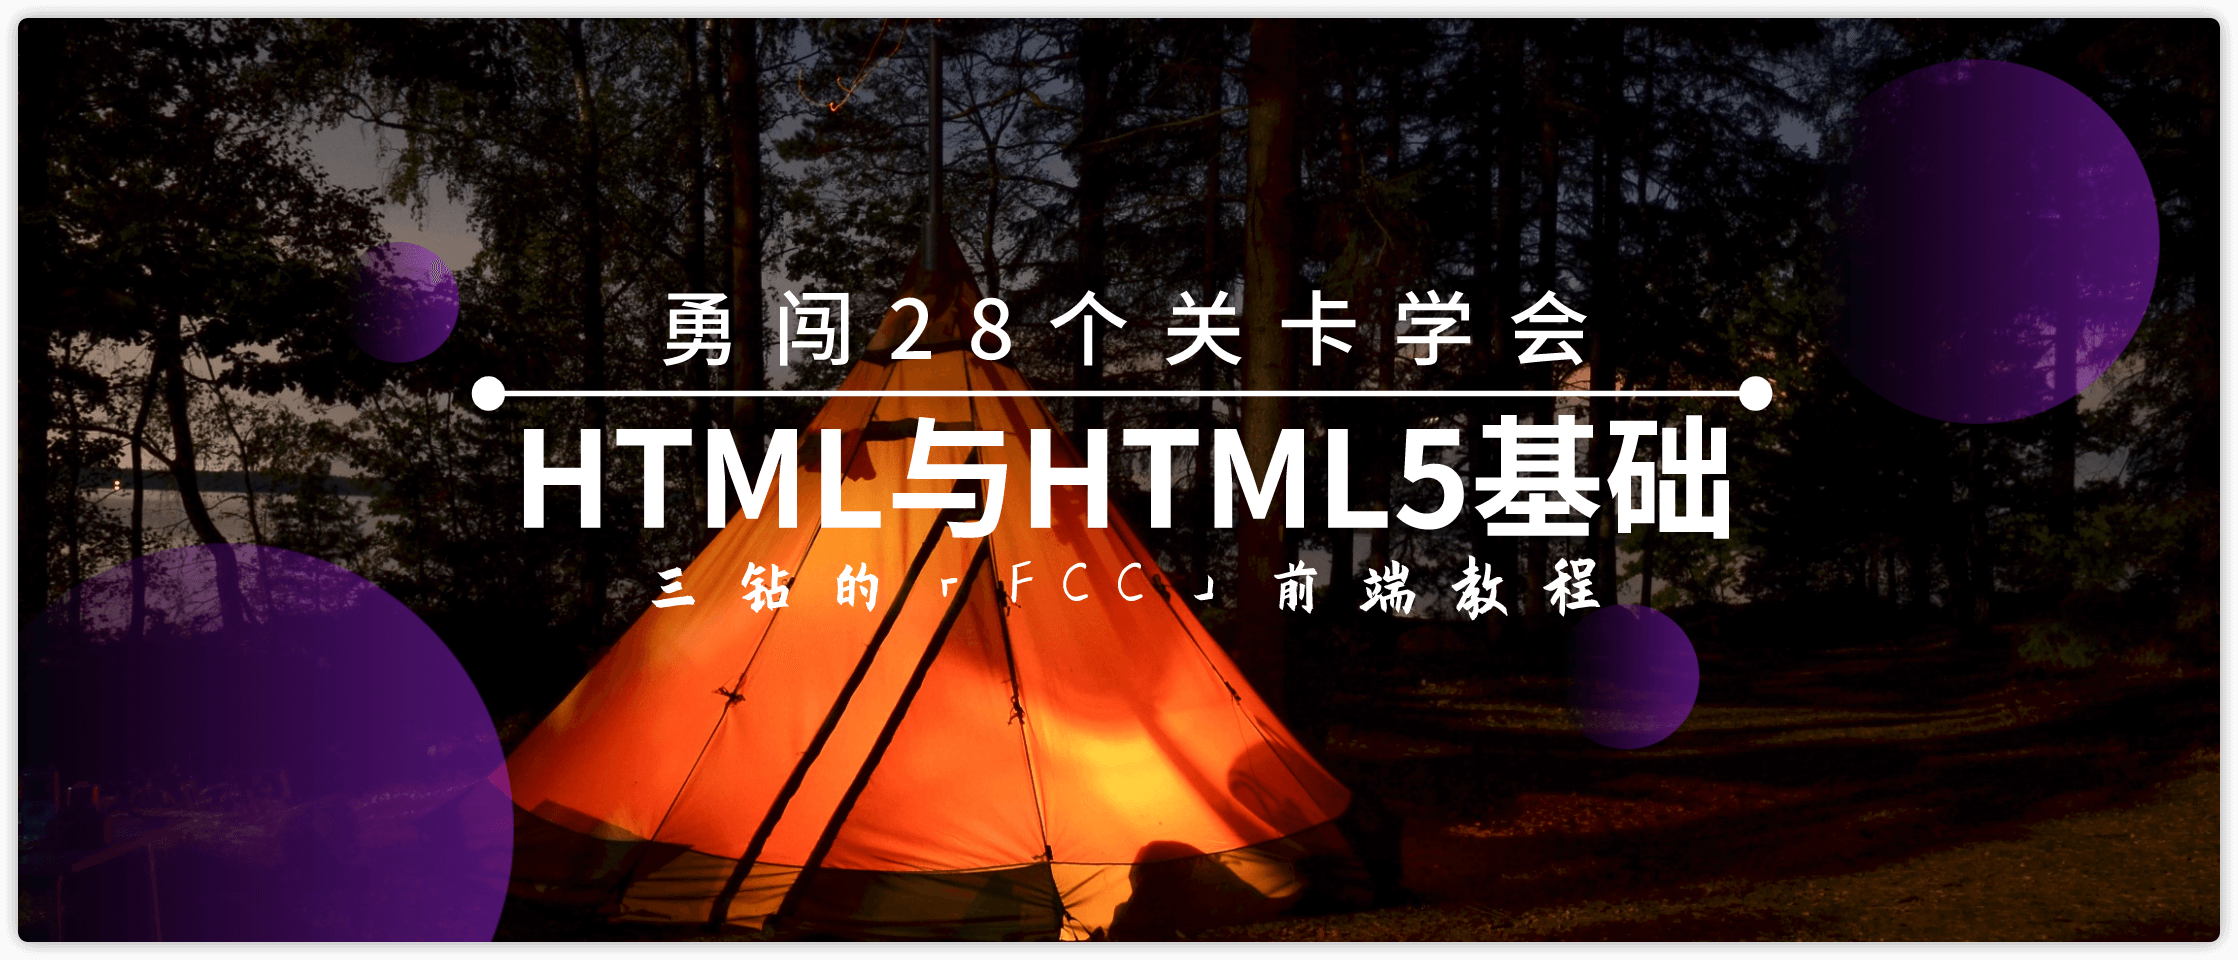 28关学会HTML与HTML5基础